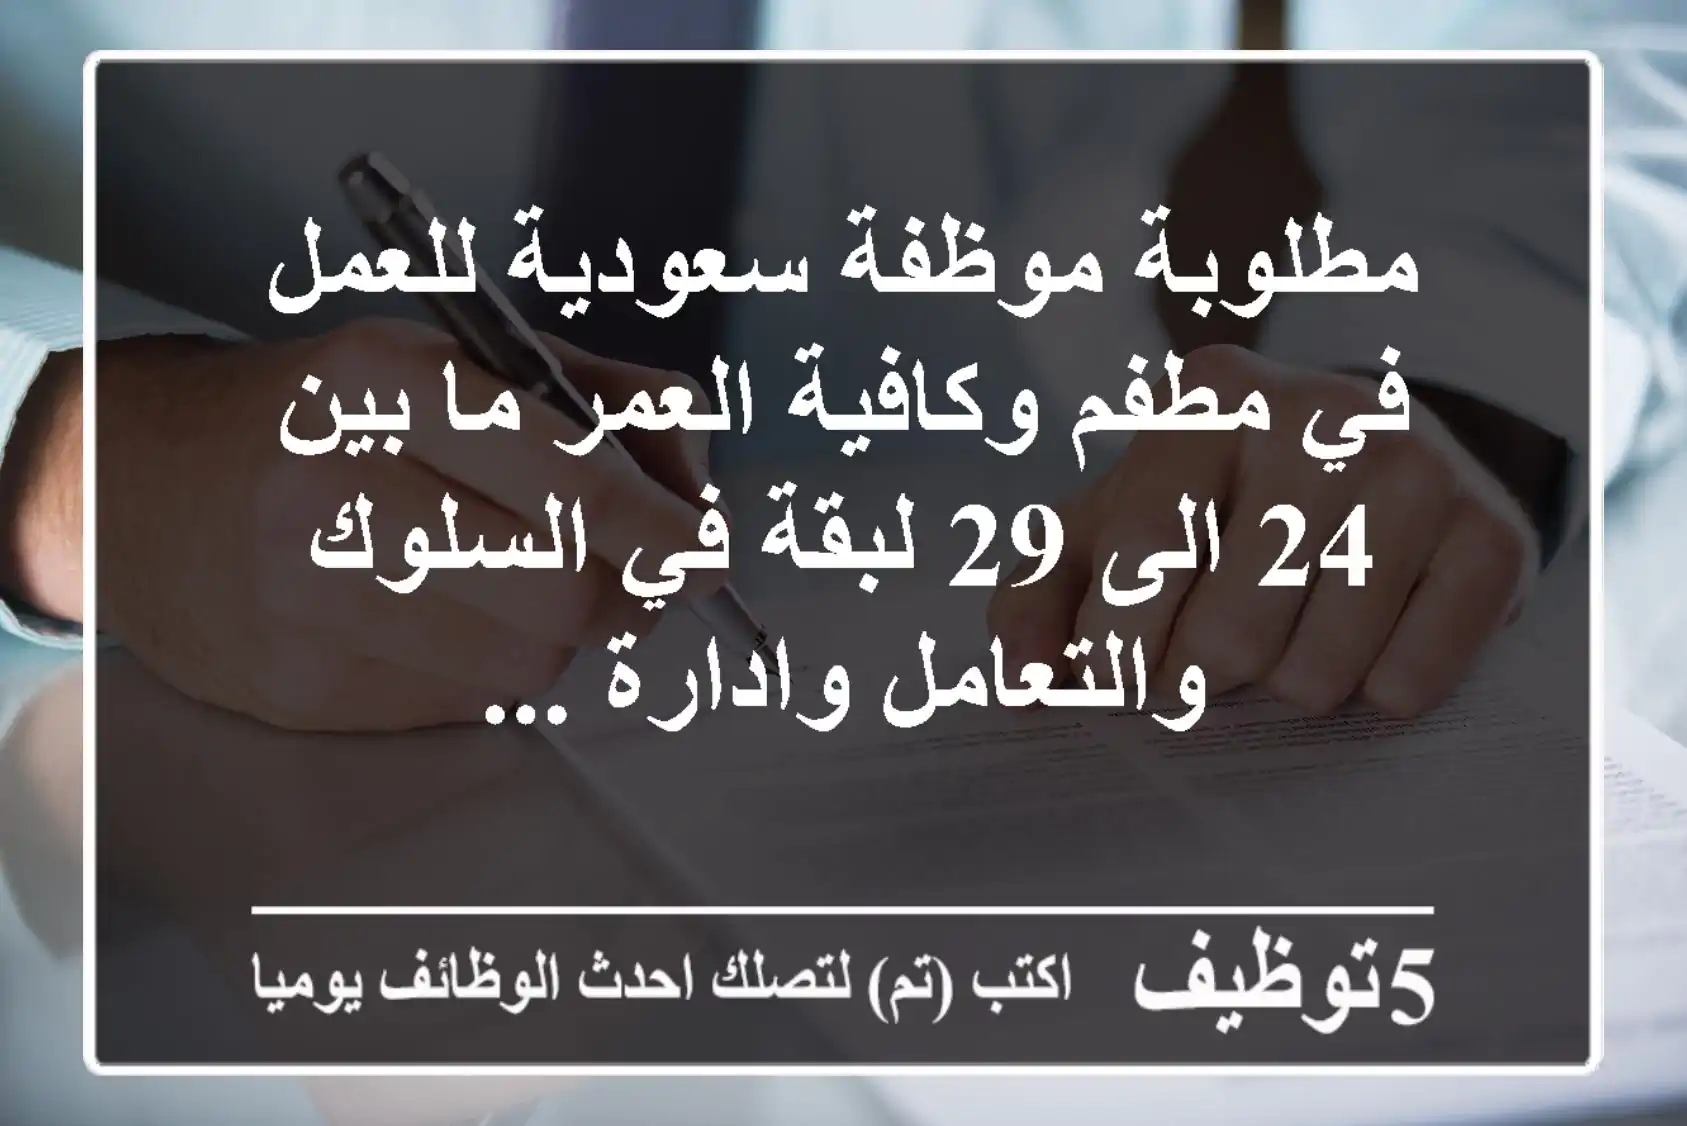 مطلوبة موظفة سعودية للعمل في مطفم وكافية العمر ما بين 24 الى 29 لبقة في السلوك والتعامل وادارة ...